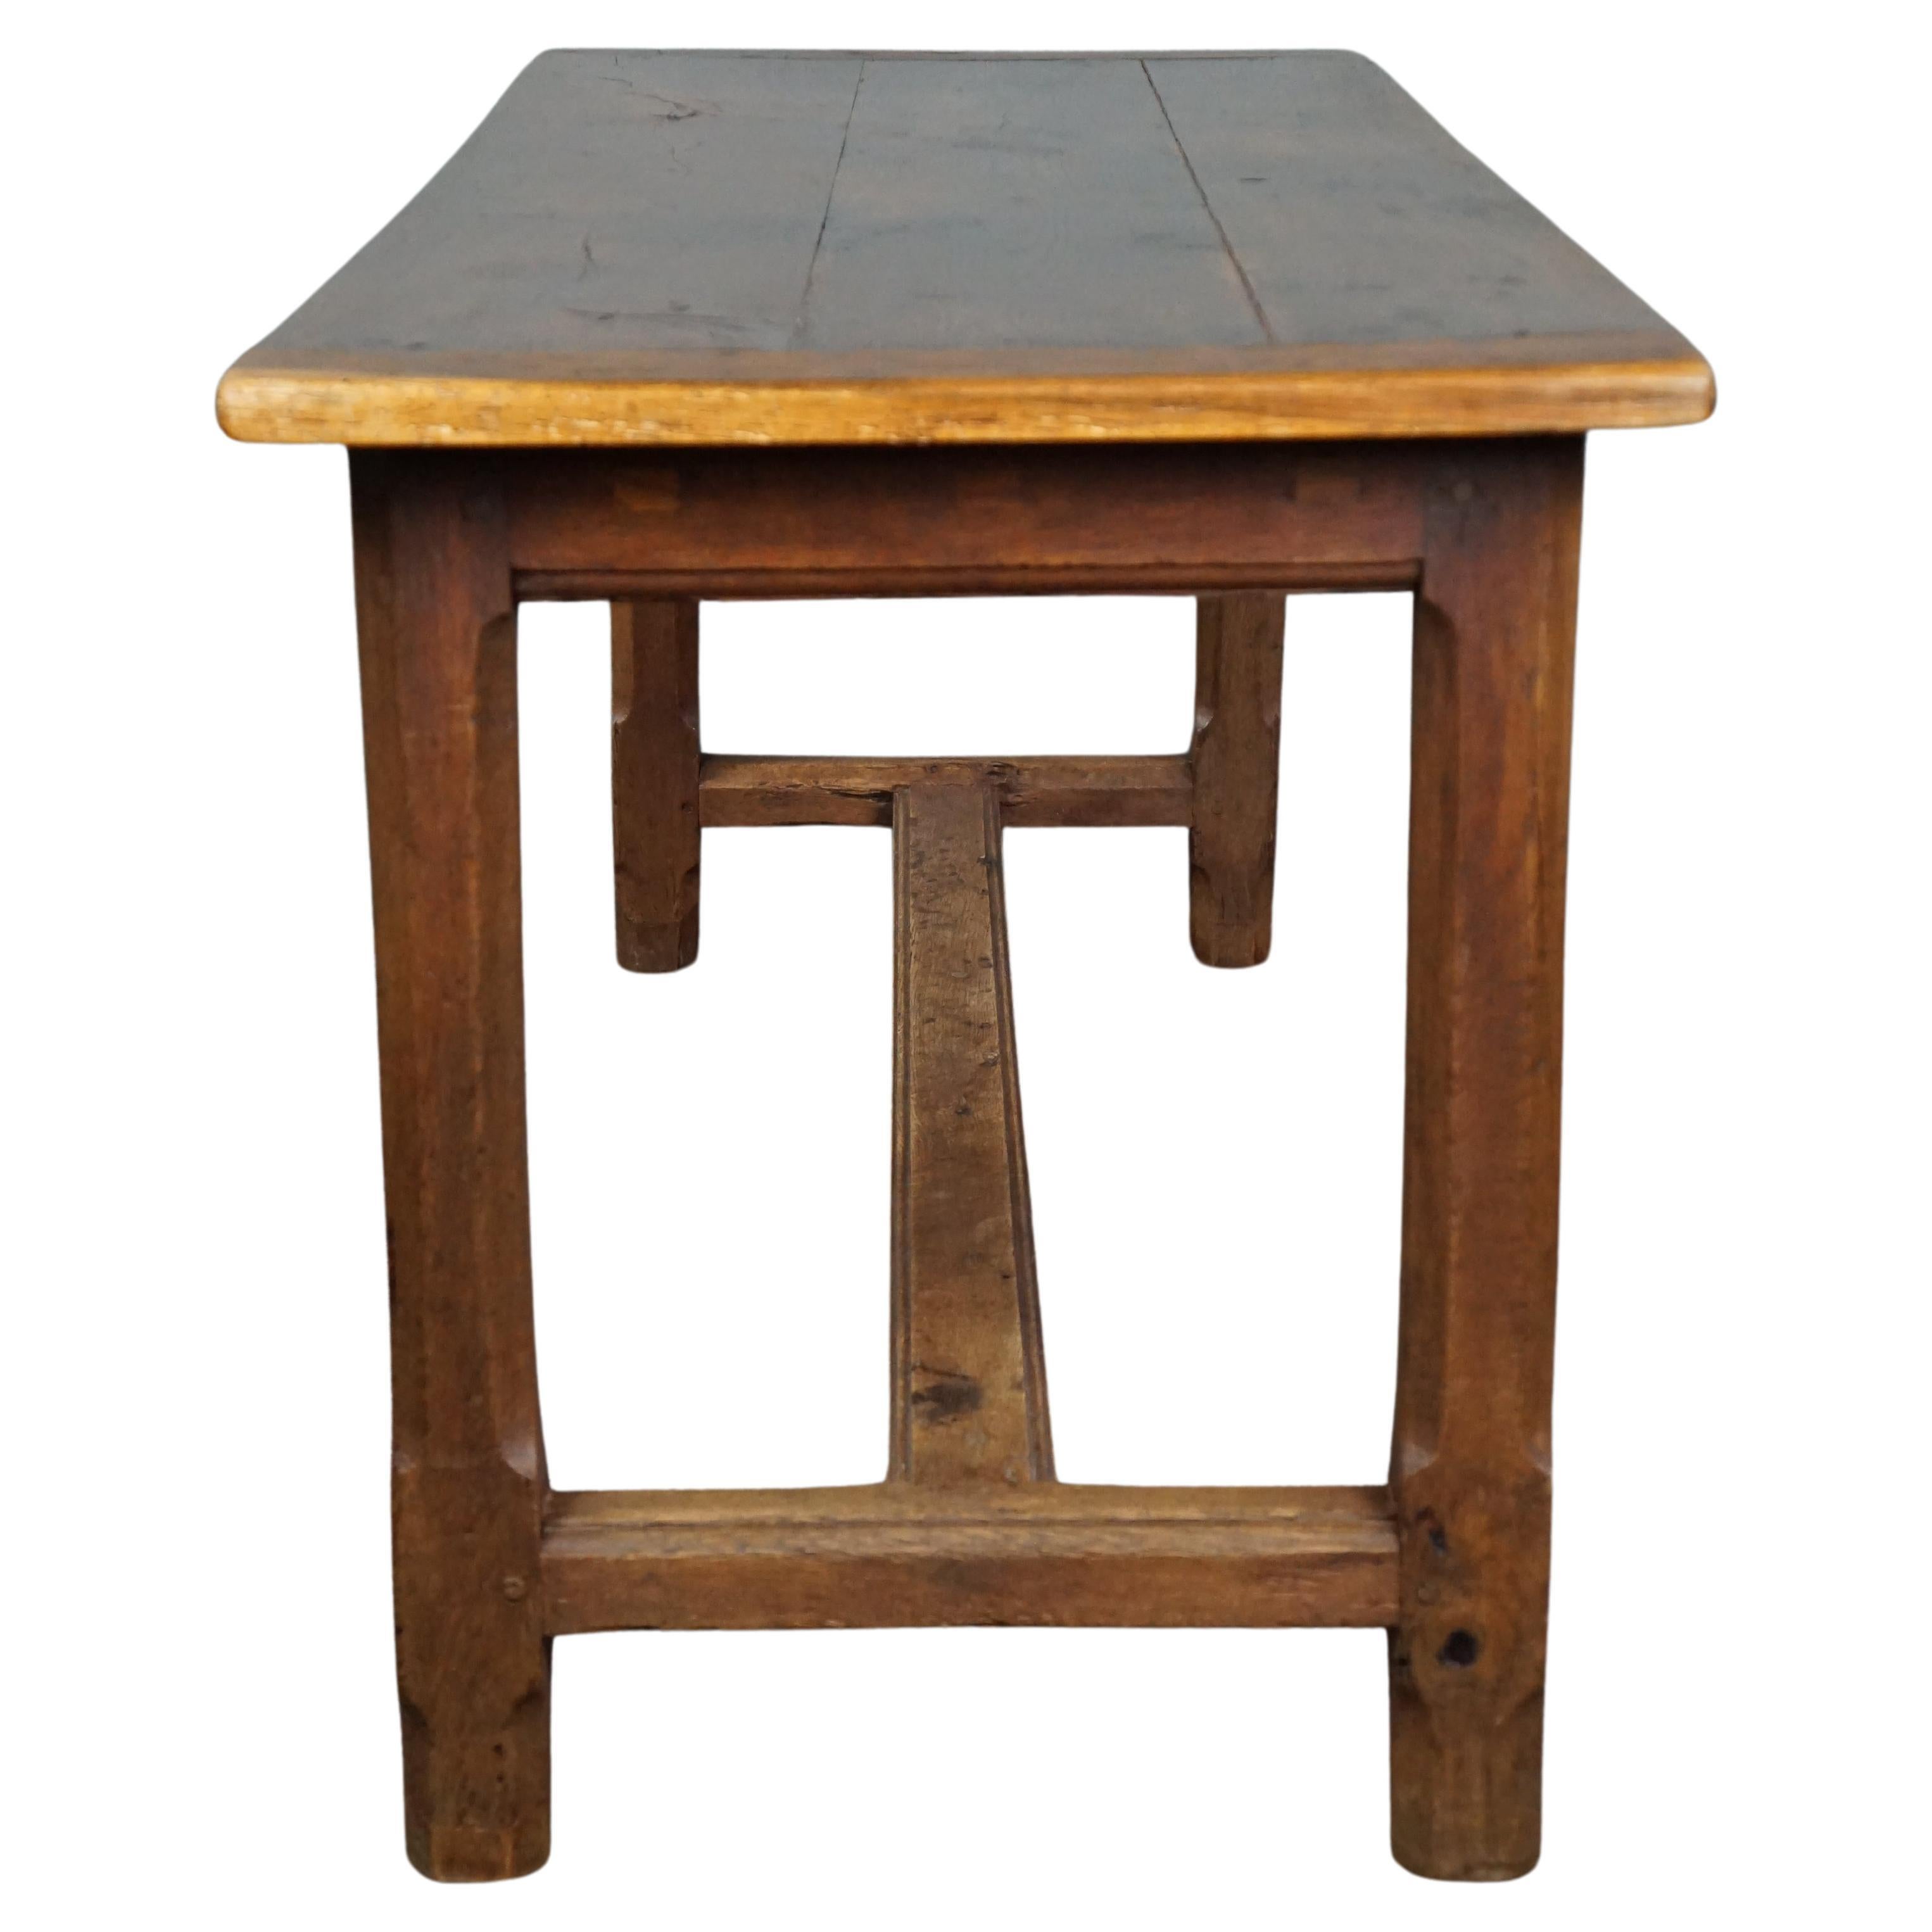 Cette table de salle à manger en chêne français ancien, robuste et subtil, est équipée d'une planche à pain et d'un tiroir. Vous disposez d'un espace limité dans votre cuisine ou votre maison, mais vous souhaitez profiter de la beauté et de la